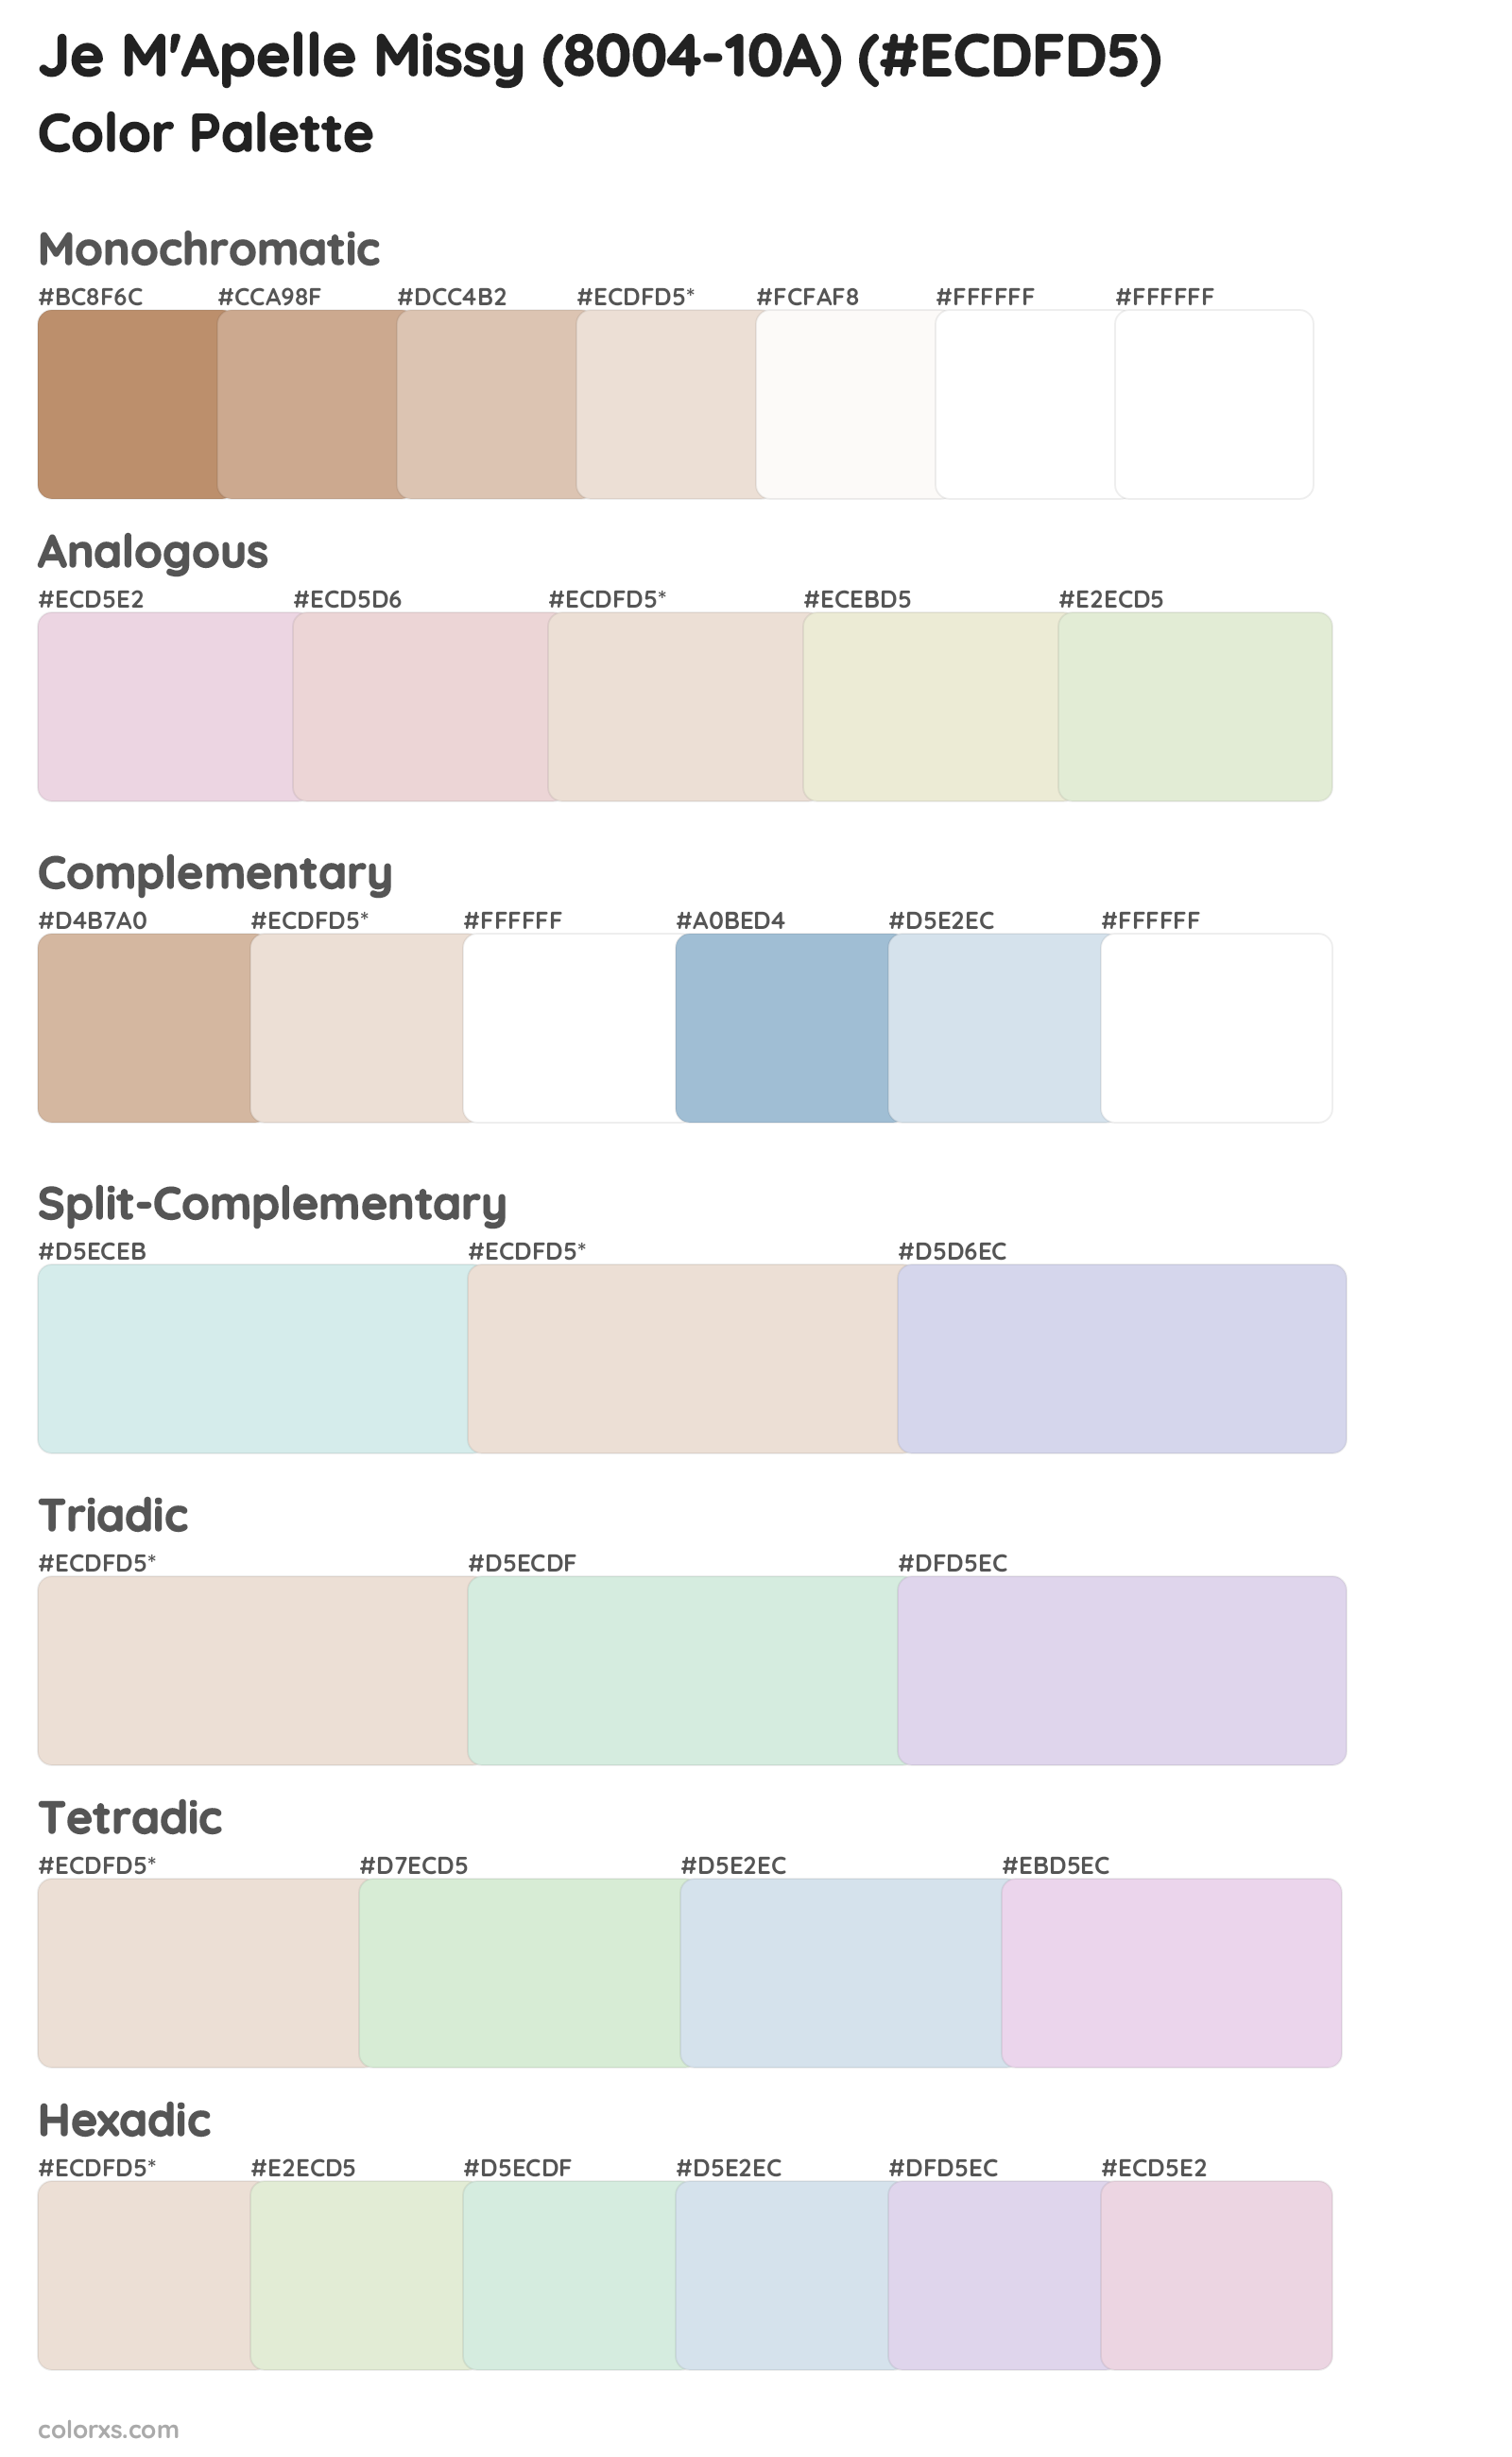 Je M'Apelle Missy (8004-10A) Color Scheme Palettes